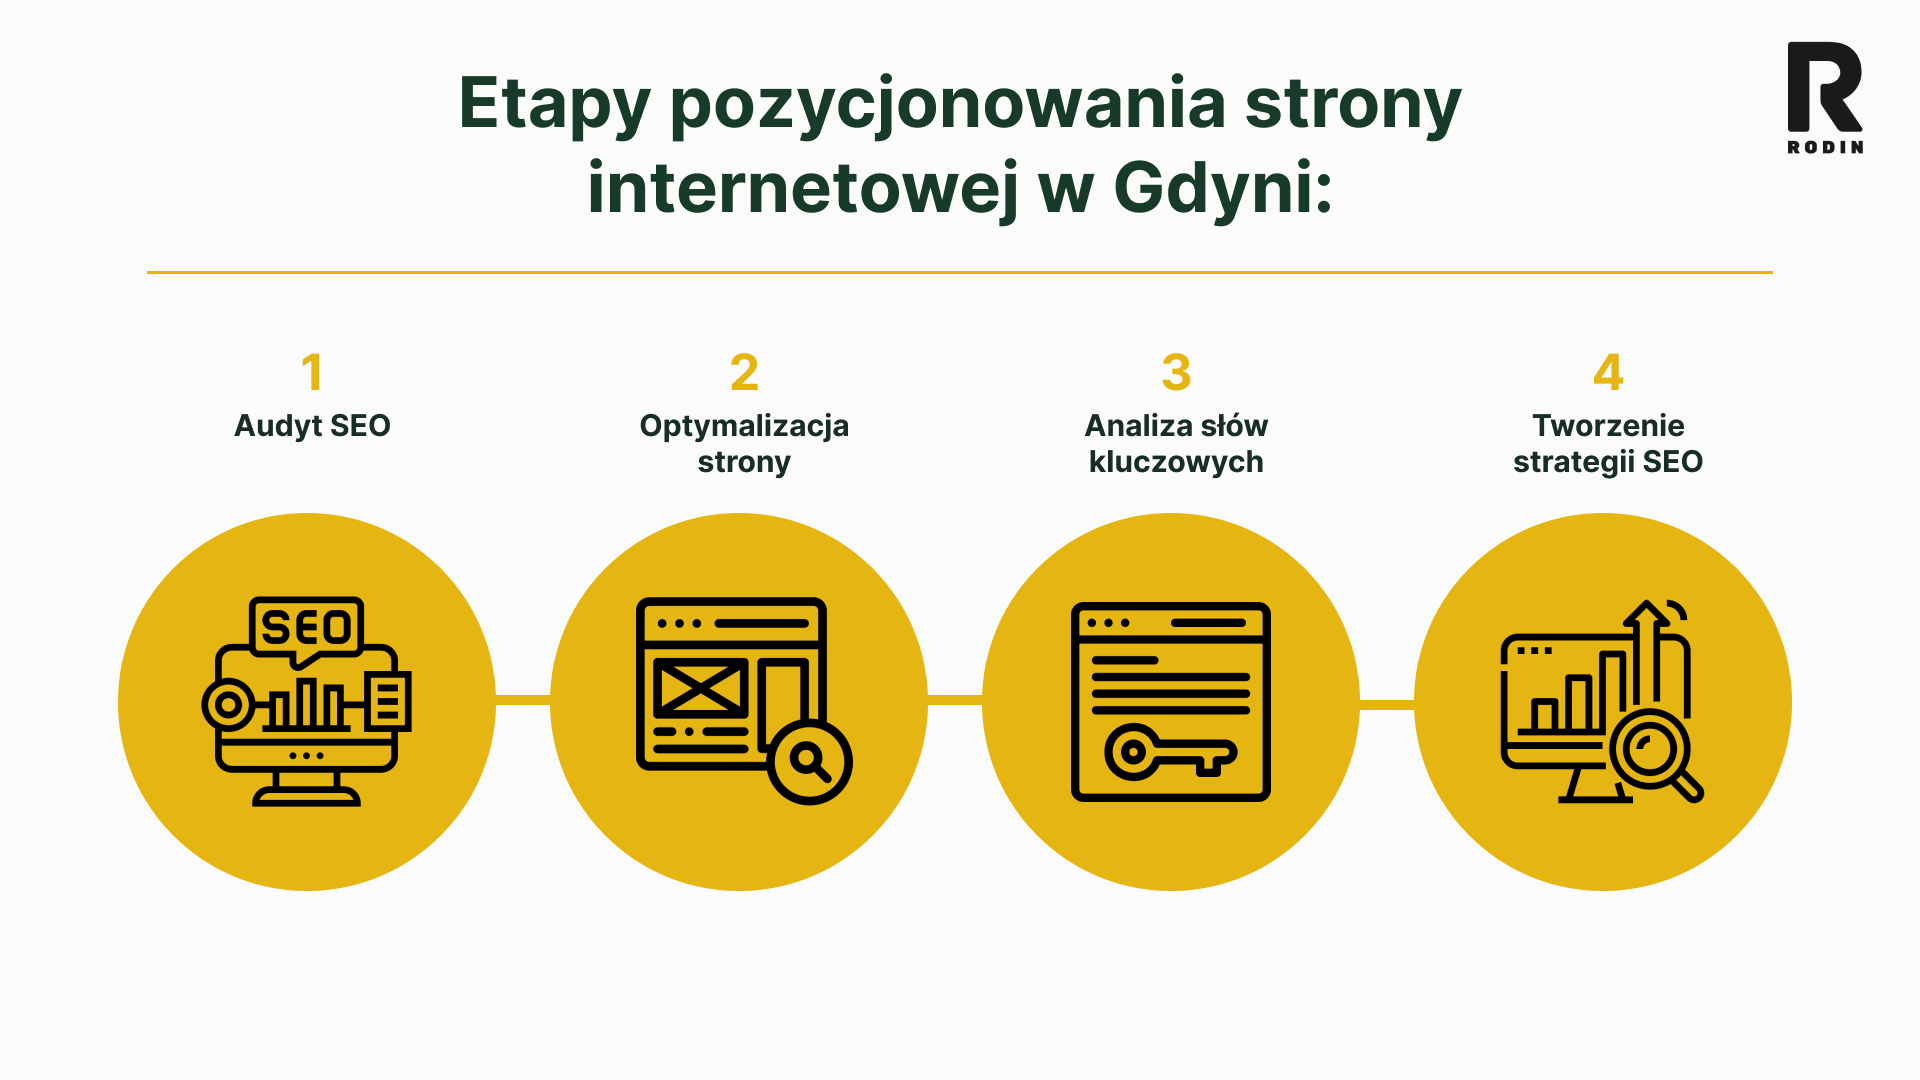 Etapy pozycjonowania strony internetowej w Gdyni